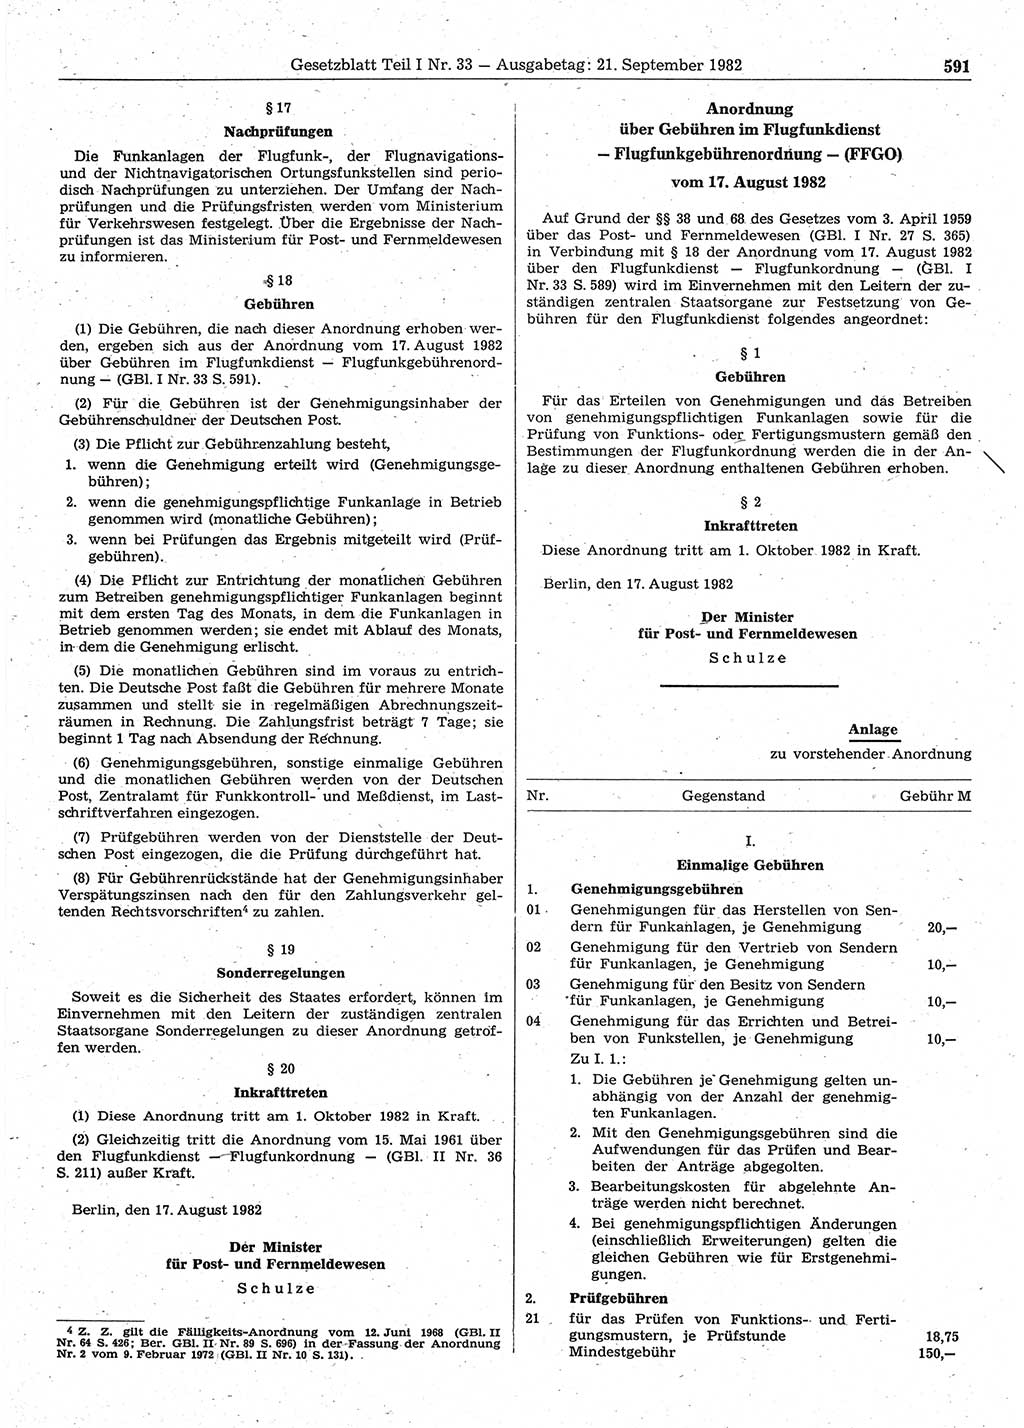 Gesetzblatt (GBl.) der Deutschen Demokratischen Republik (DDR) Teil Ⅰ 1982, Seite 591 (GBl. DDR Ⅰ 1982, S. 591)